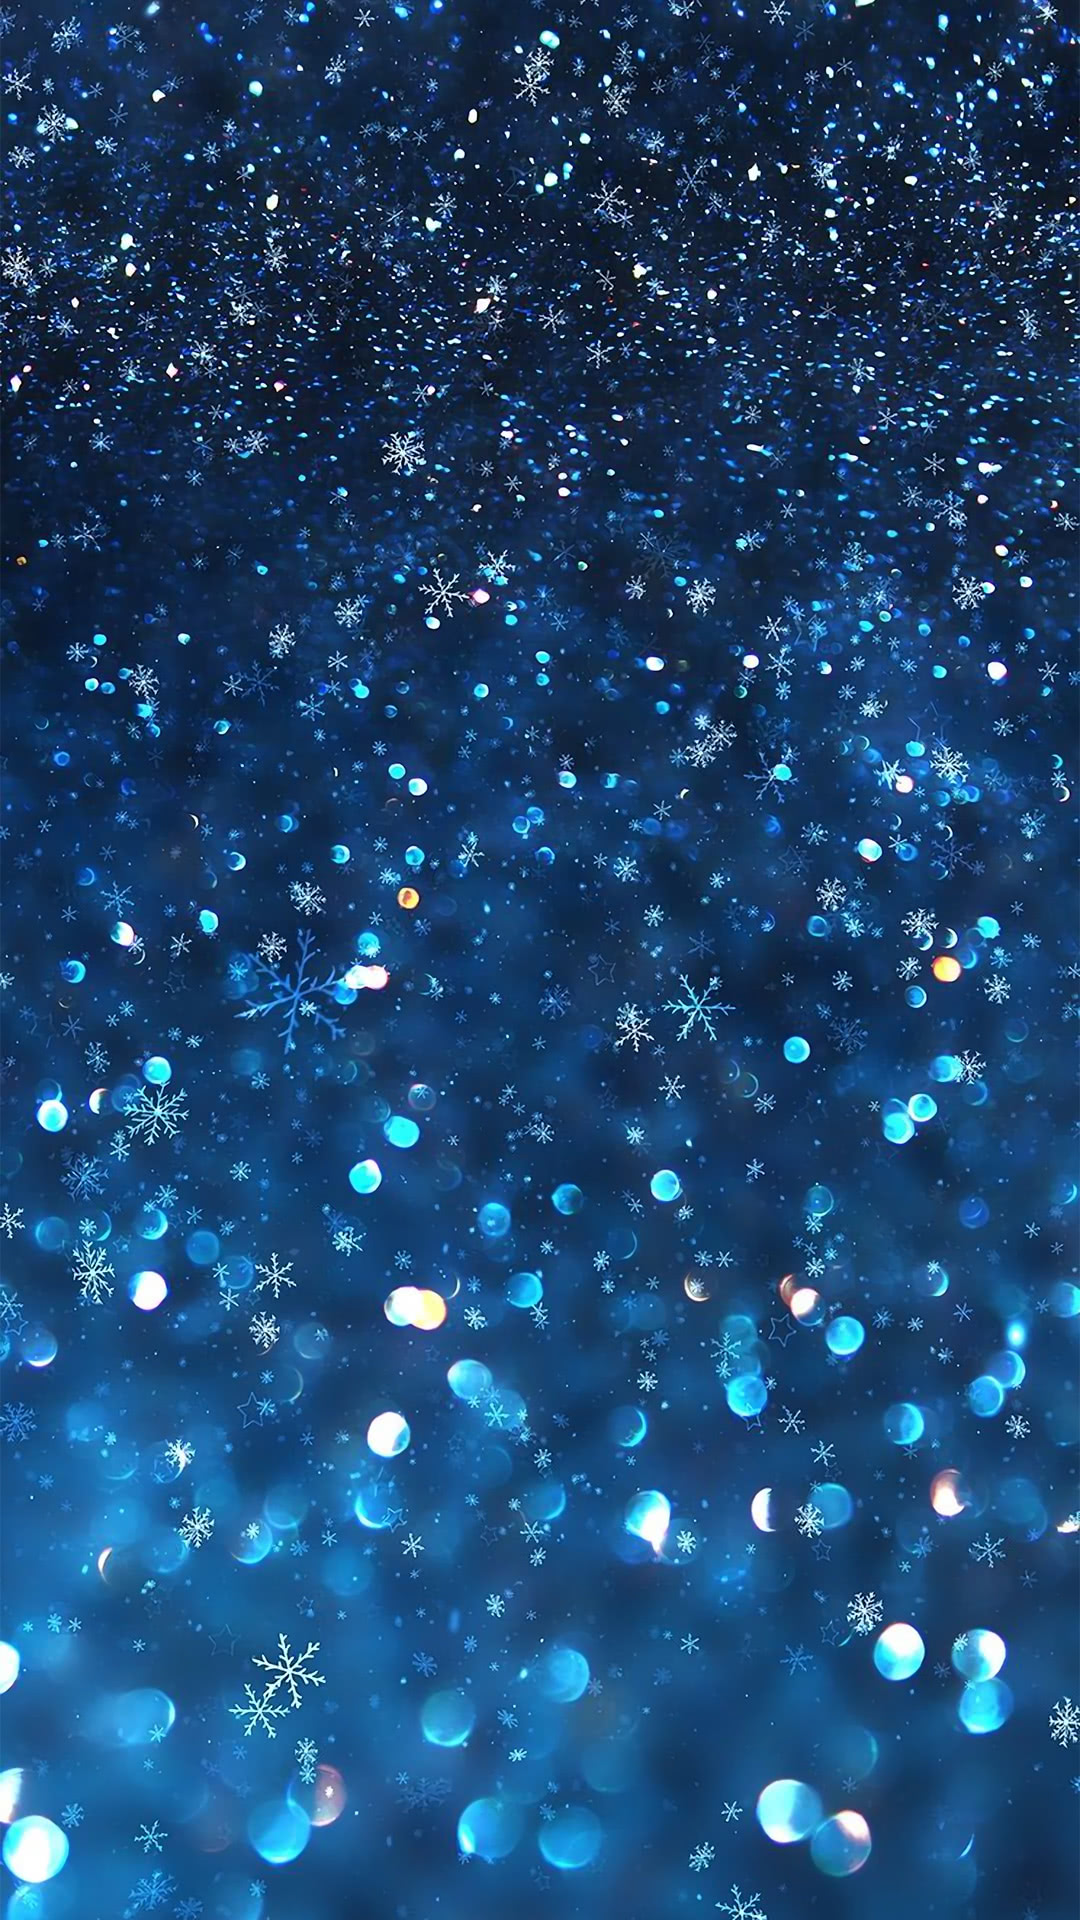 輝く雪の結晶 Iphone Wallpapers